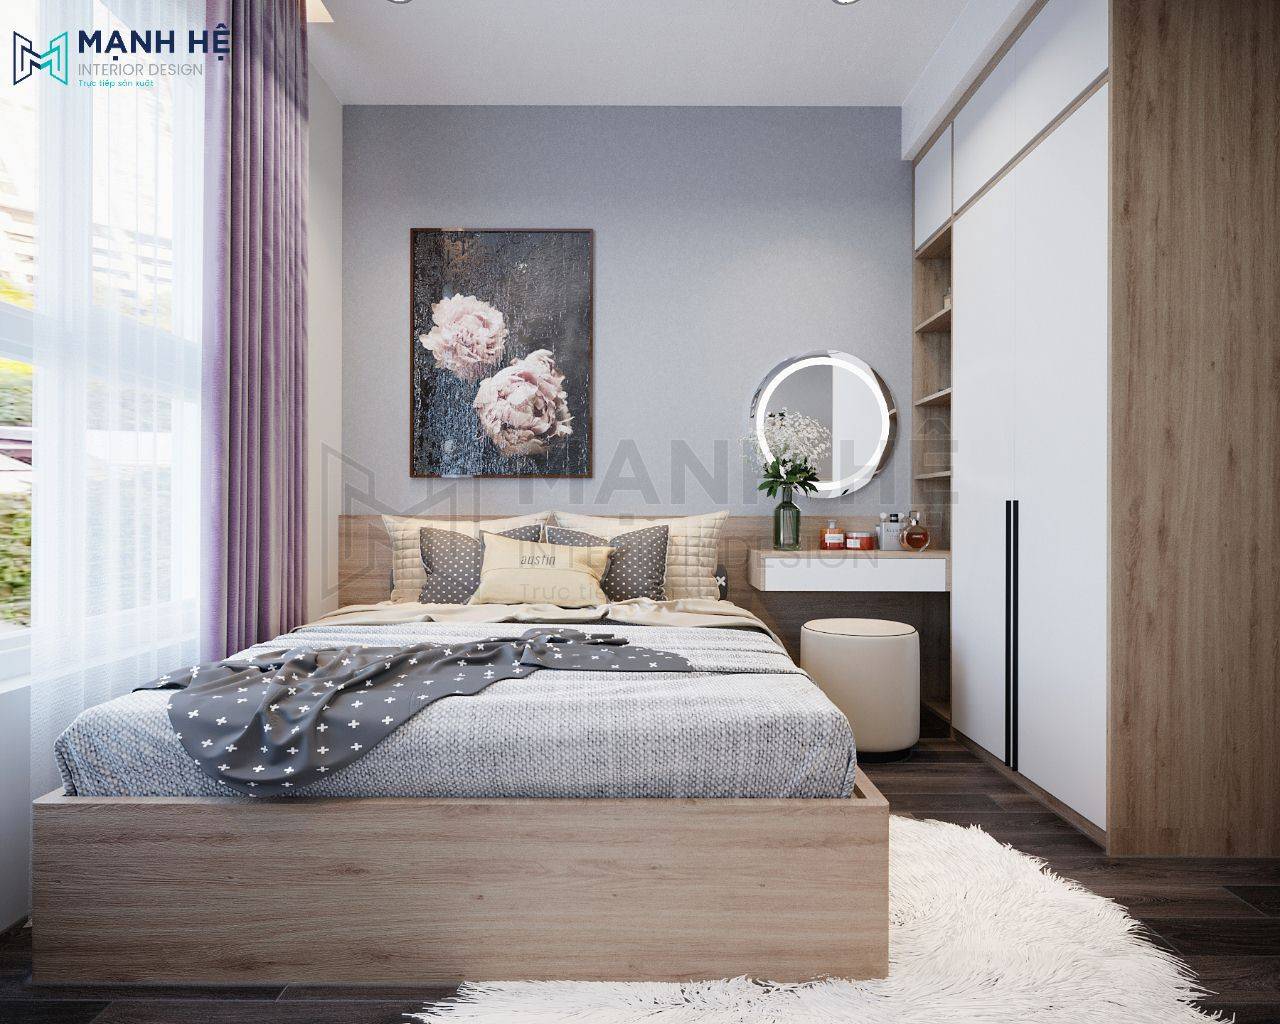 Top mẫu trang trí và thiết kế phòng ngủ đẹp cho nam đơn giản hiện đại   Cleanipedia